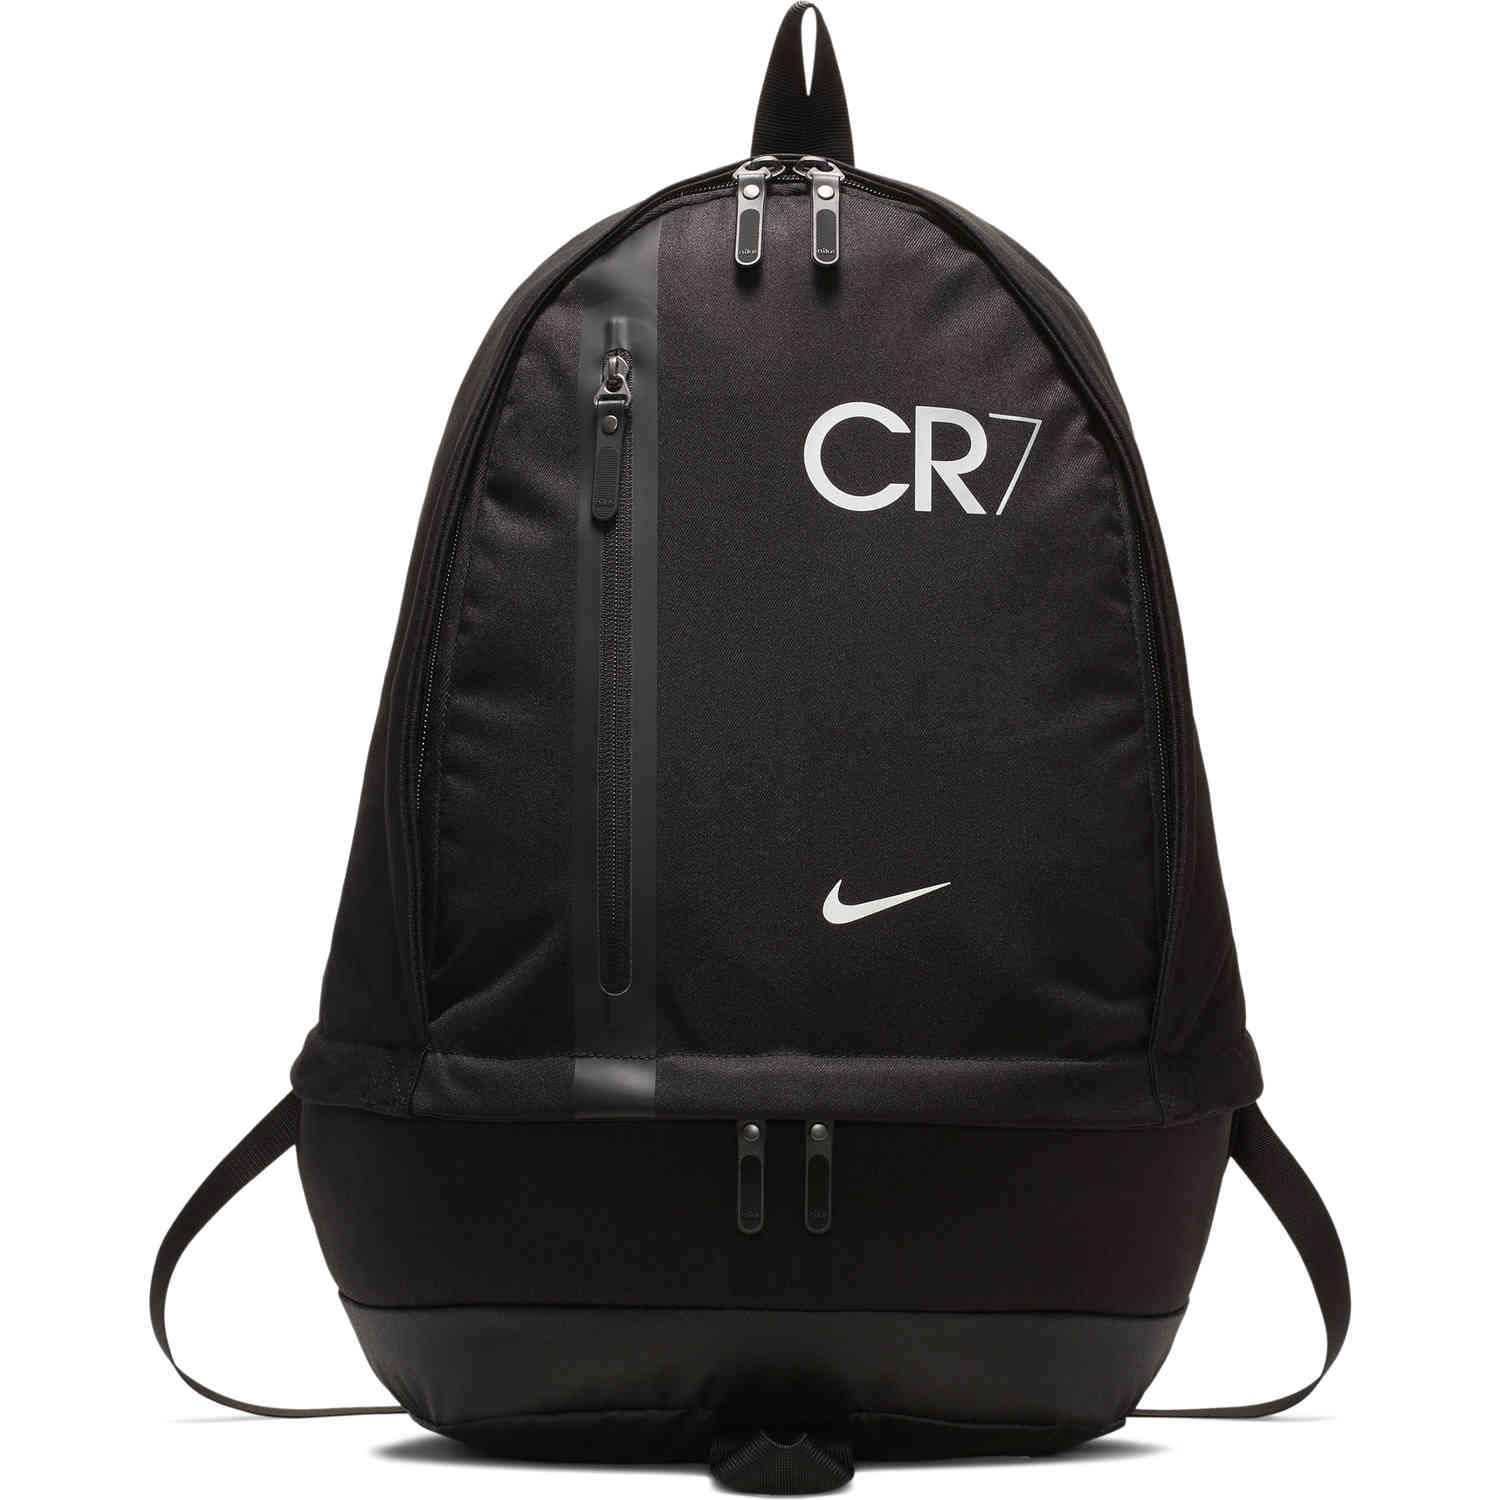 Nike CR7 Cheyenne Backpack - Chapter 7 